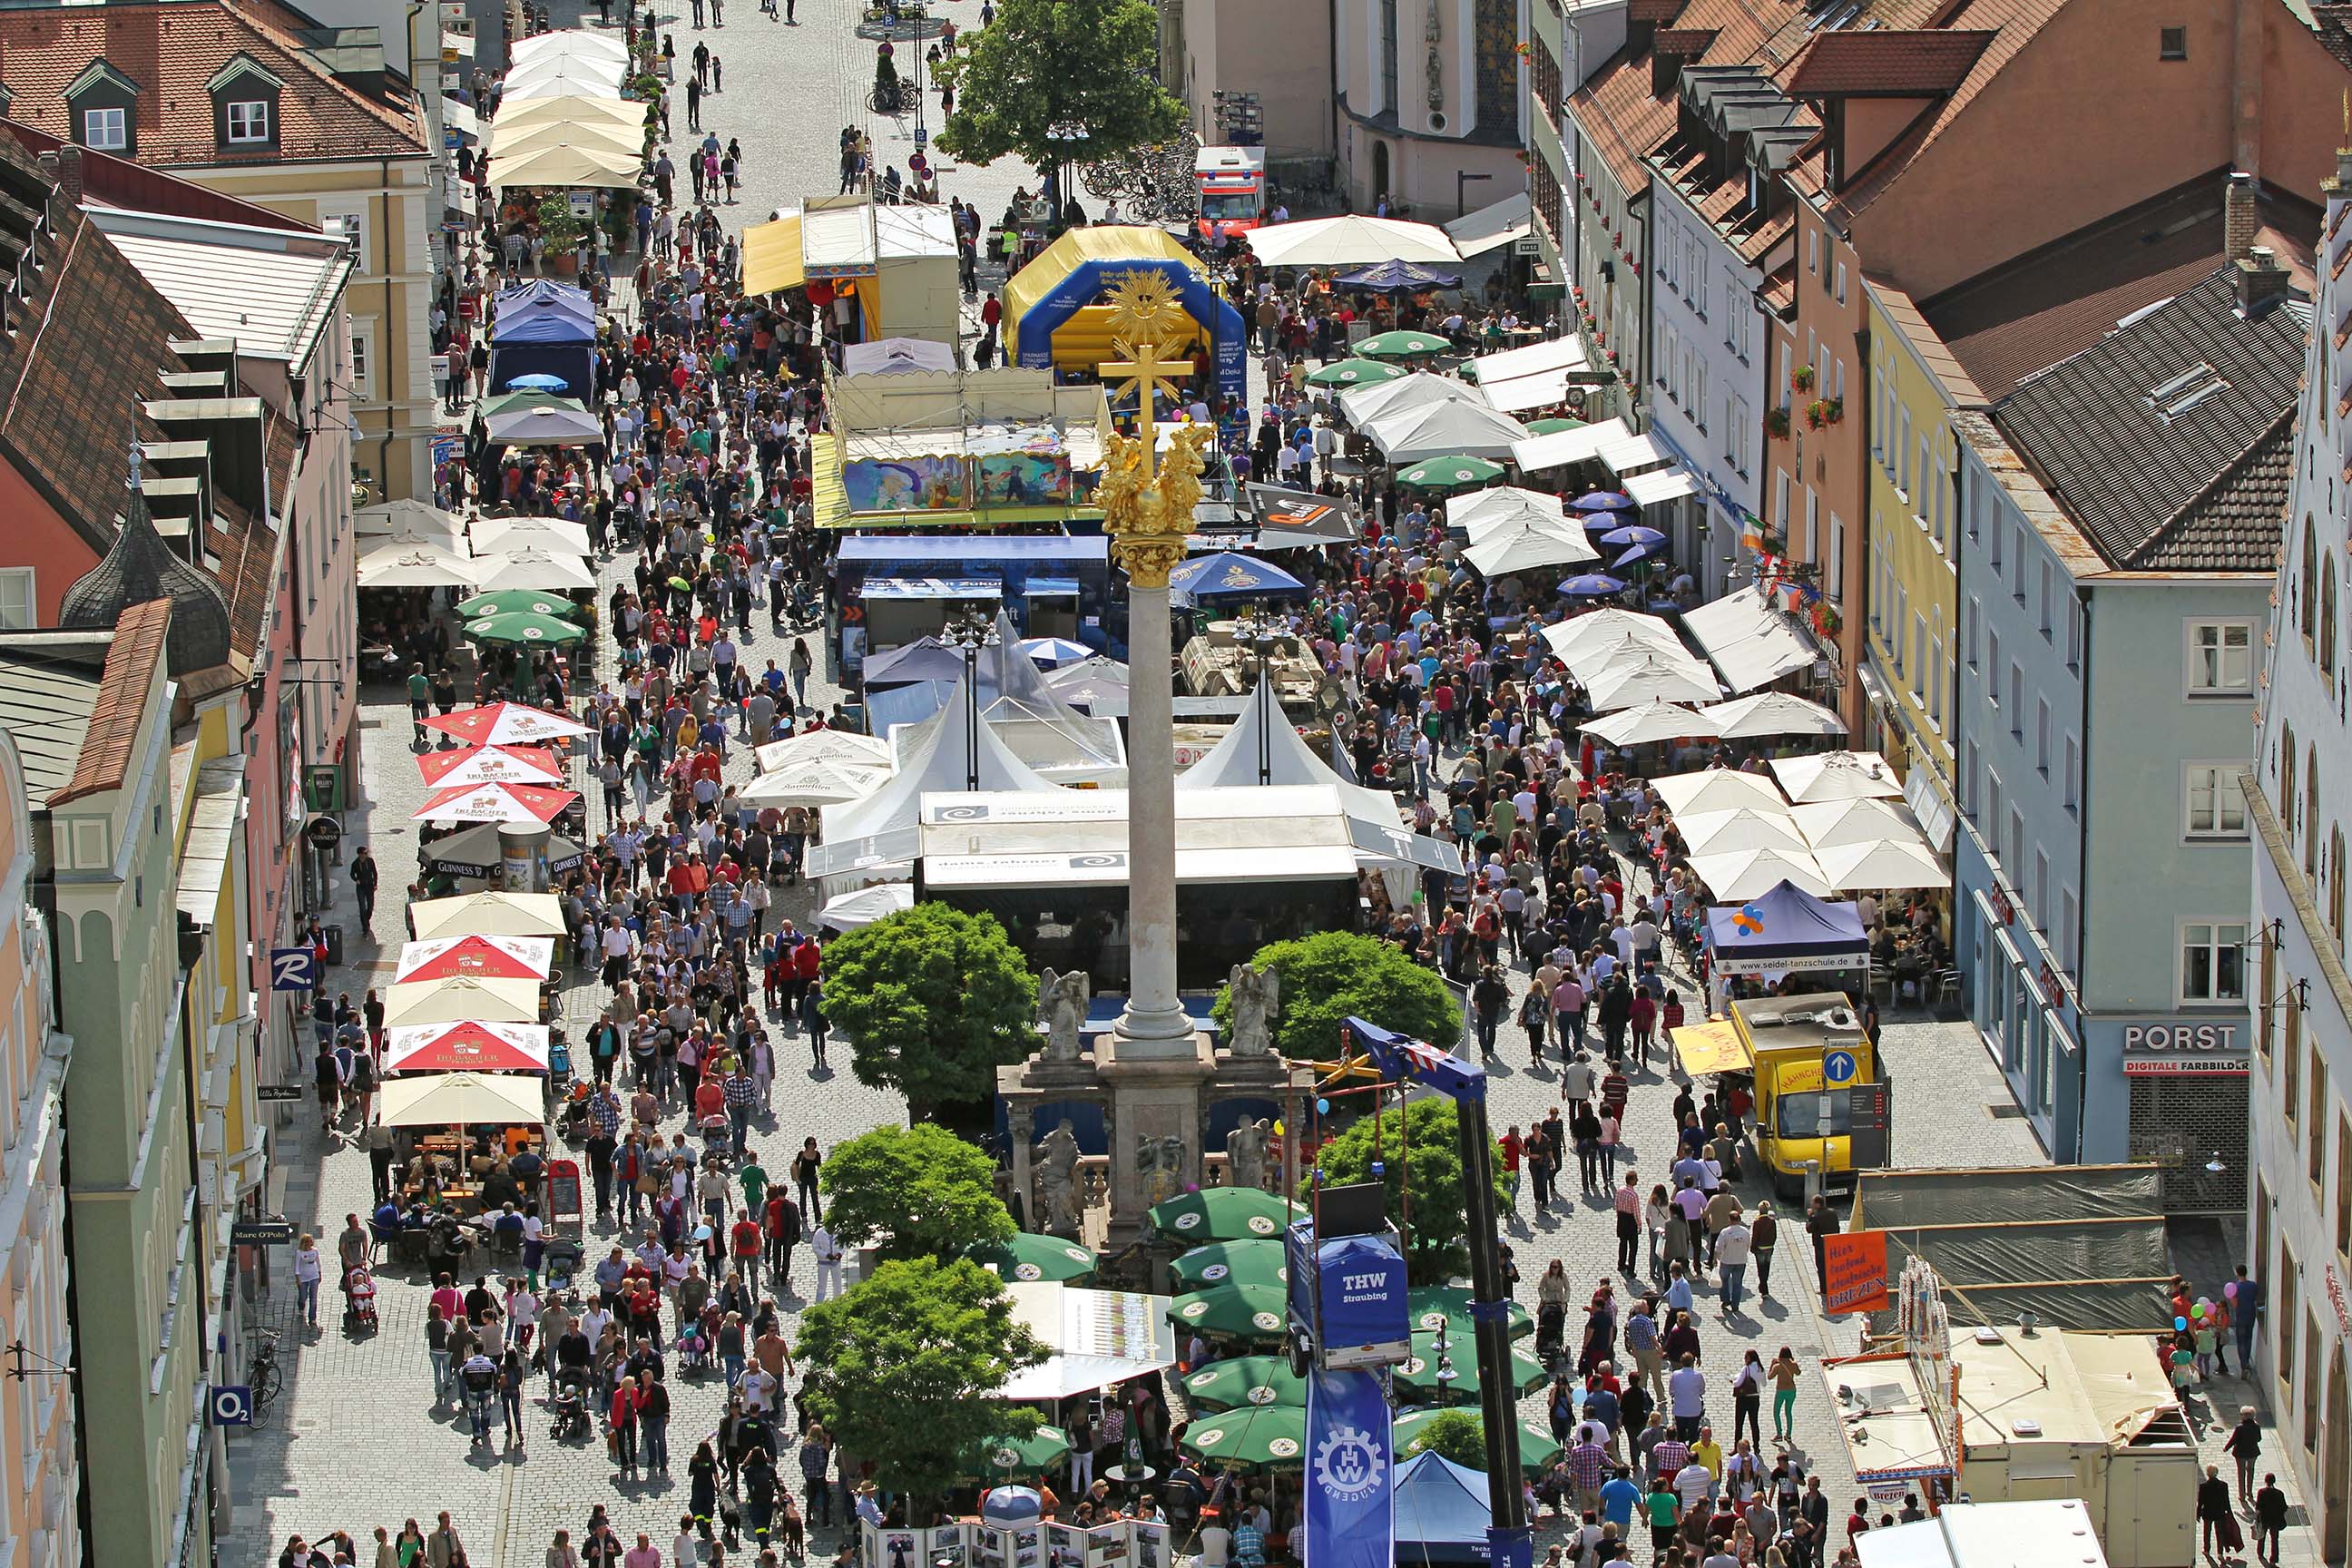 Viele Menschen besuchen ein Fest auf dem Straubinger Stadtplatz. Die Sitzplätze werden durch Sonnenschirme angenehm beschattet.